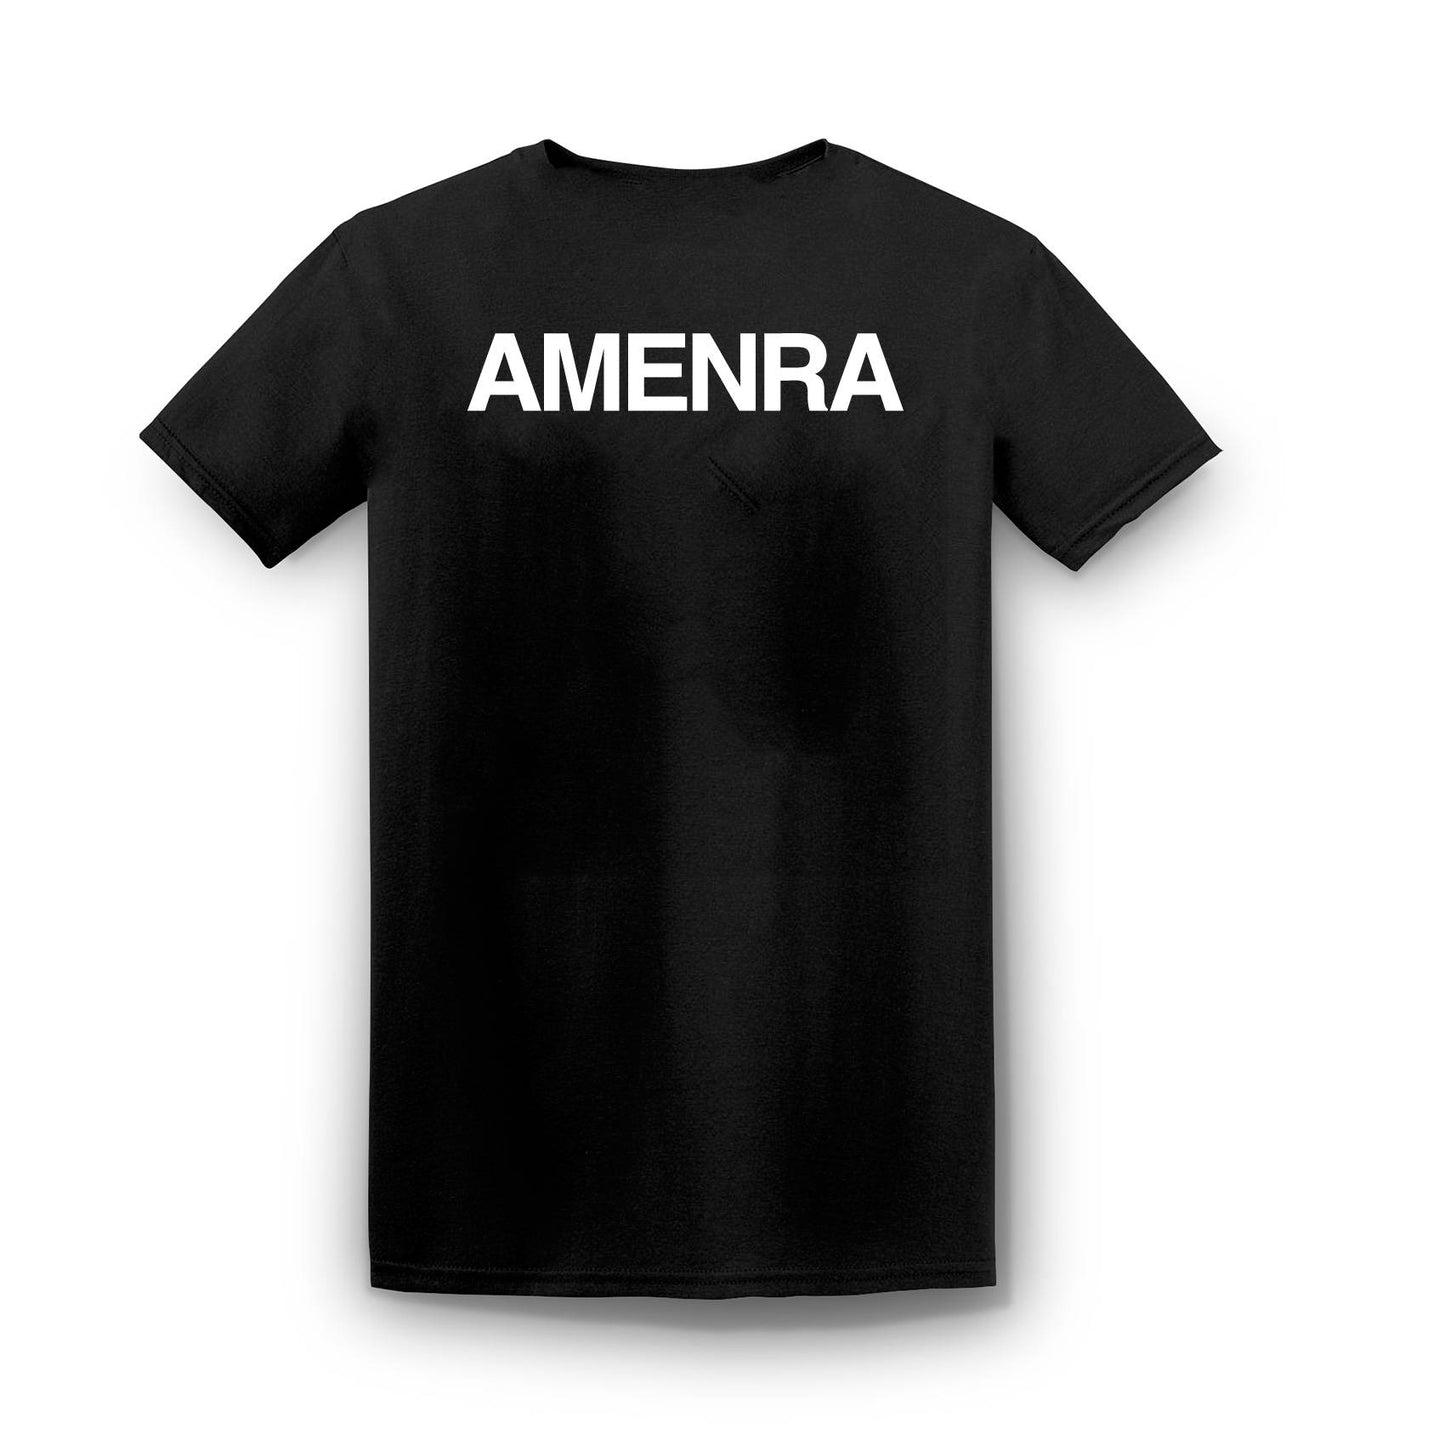 AMENRA. Live II (Black T-shirt)